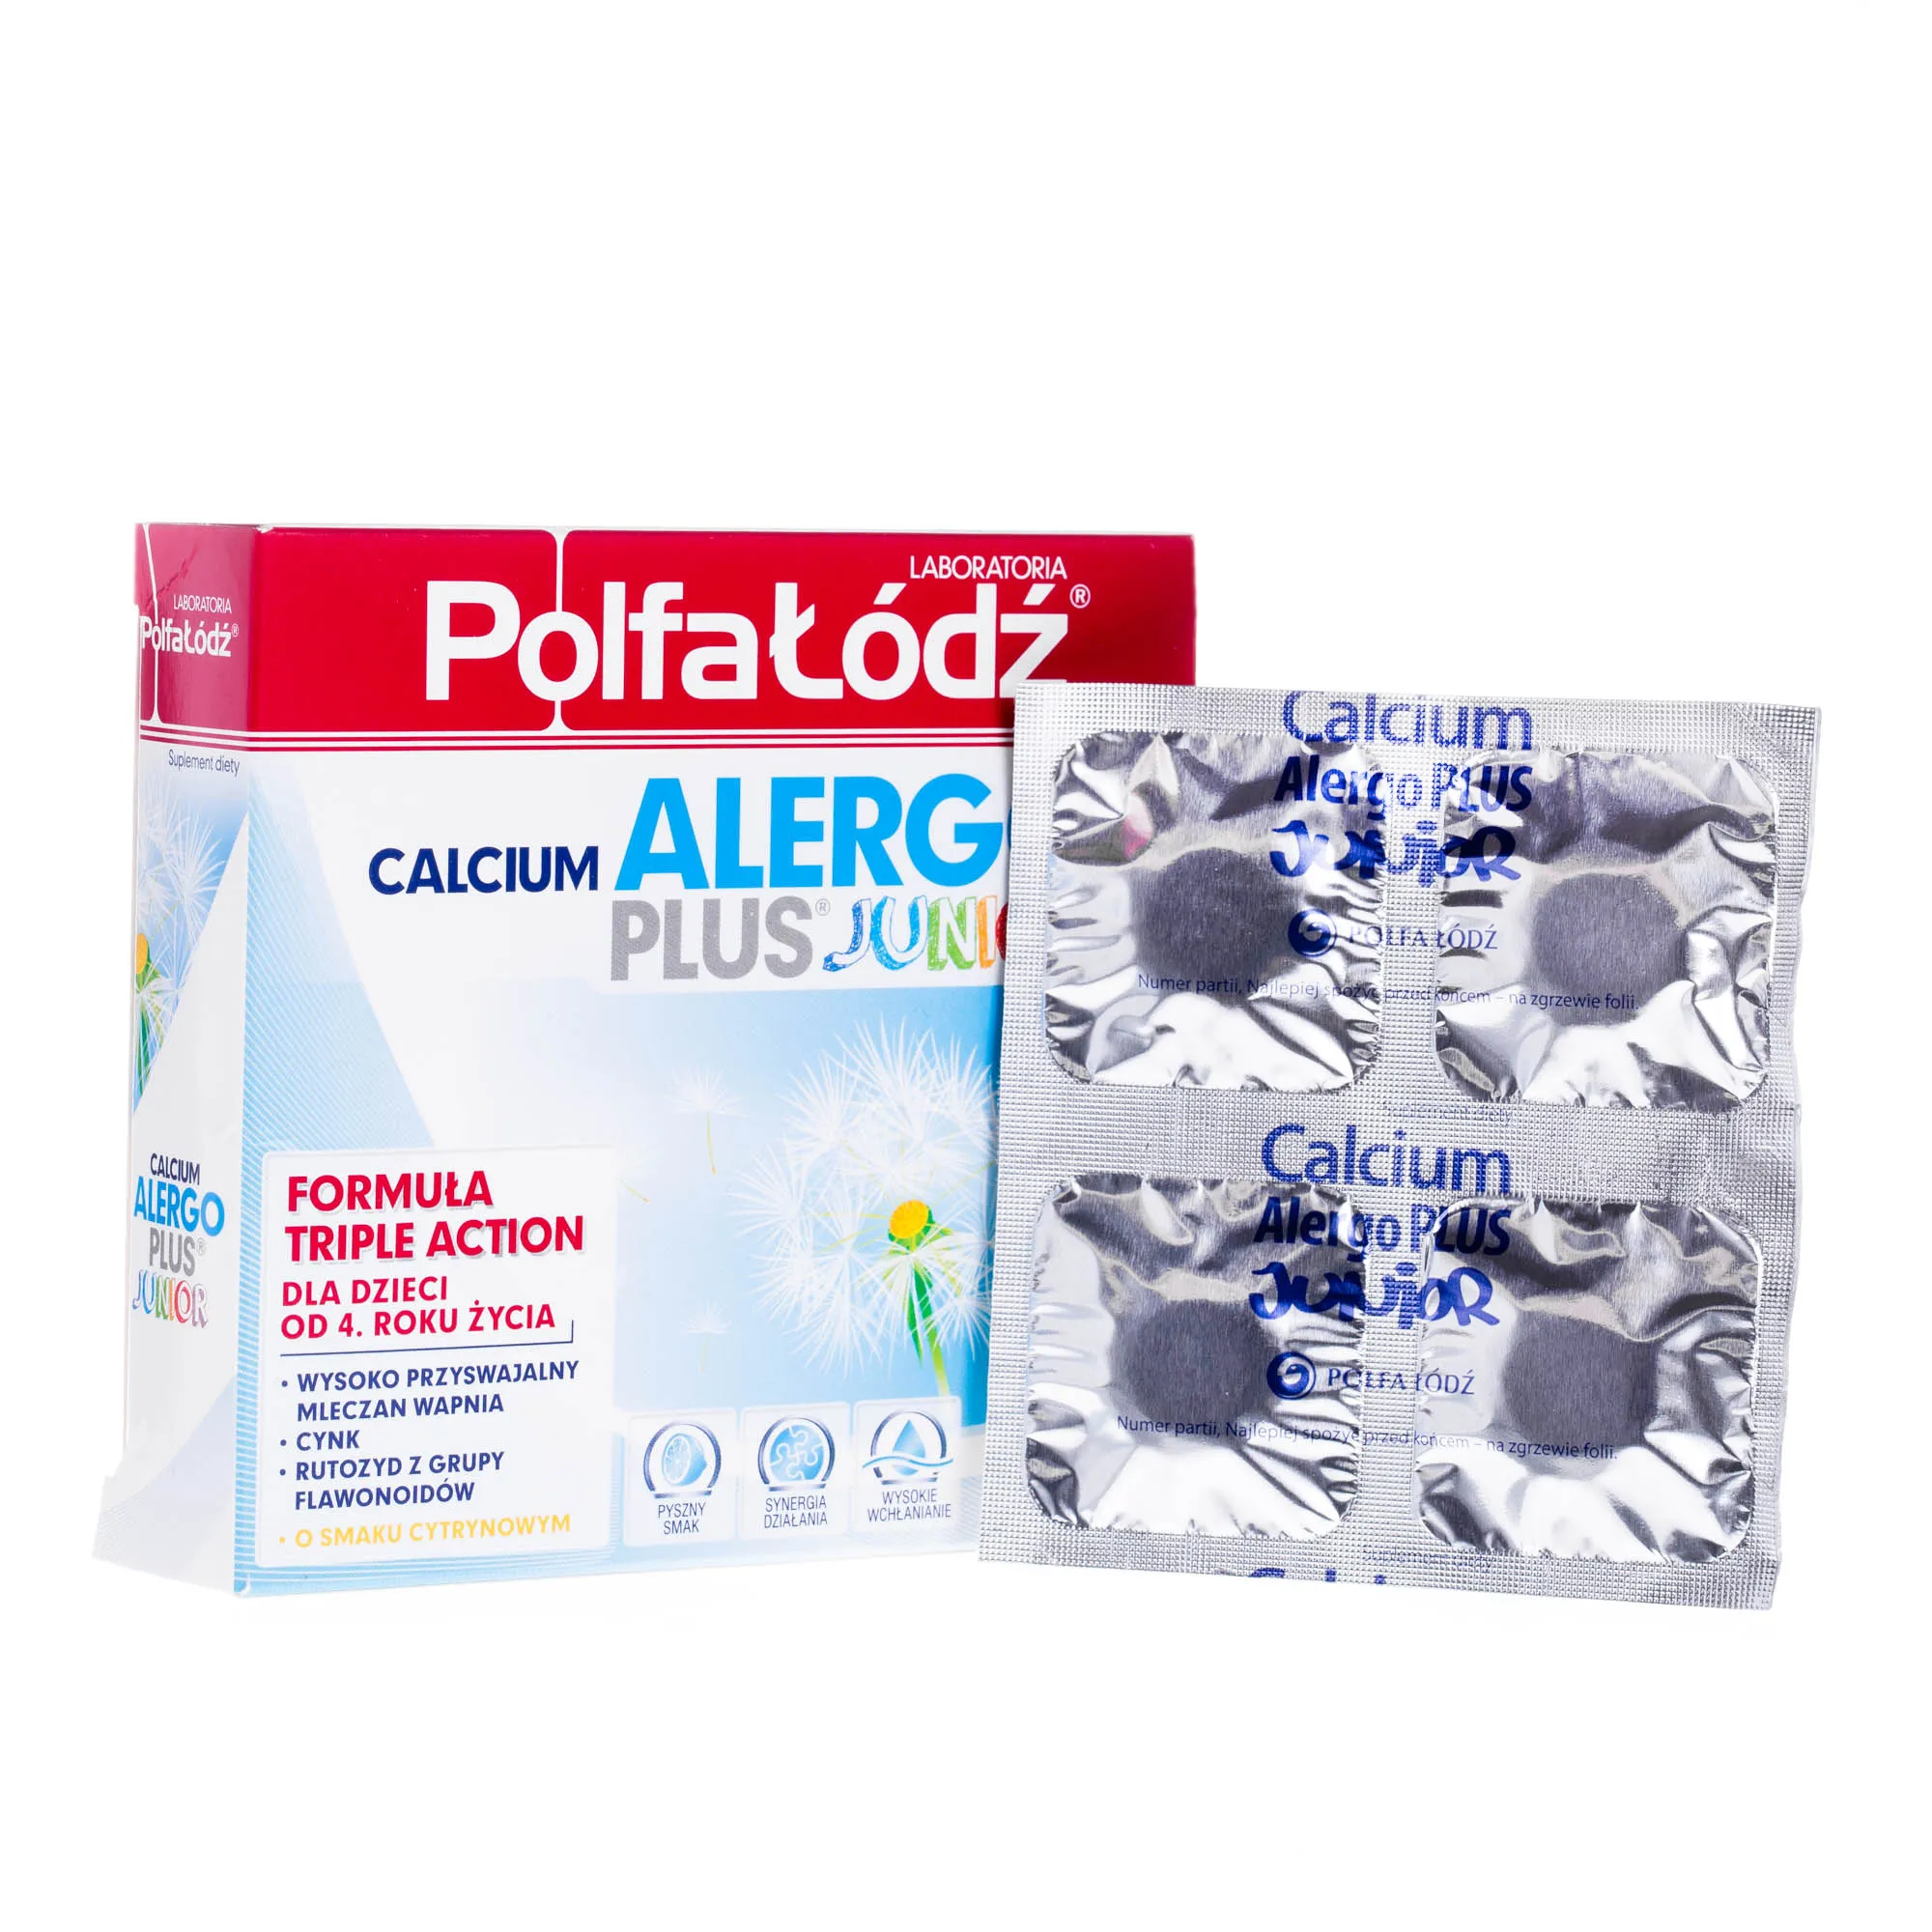 Calcium alergo plus junior, suplement diety, 16 saszetek 